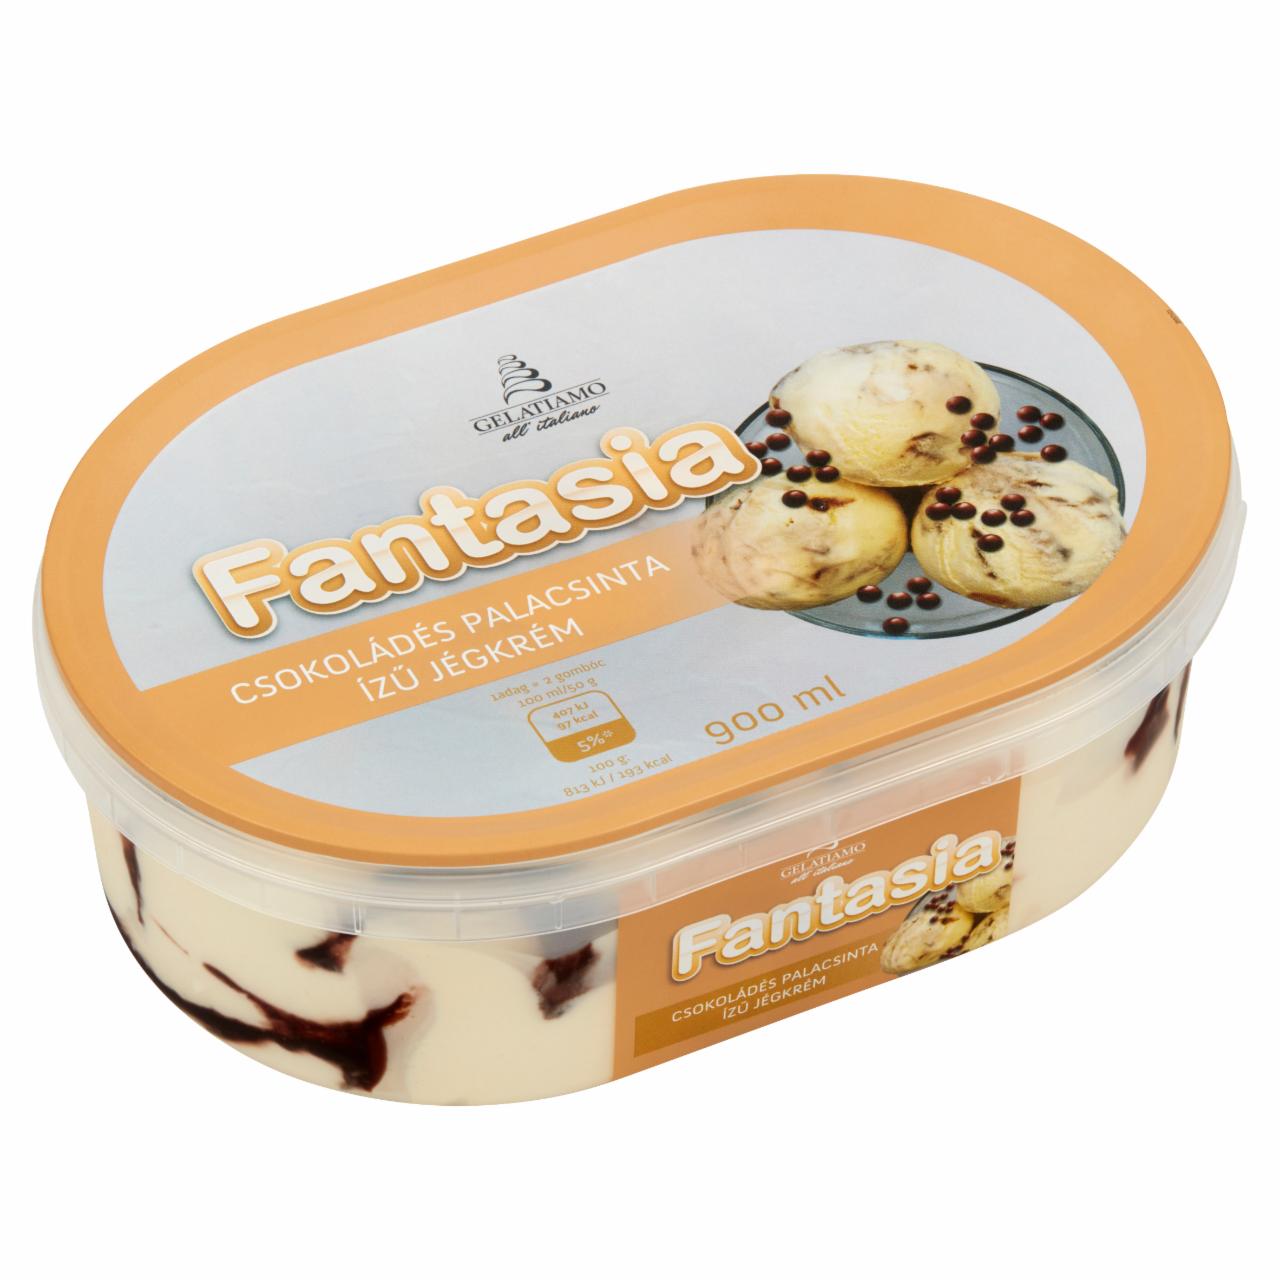 Képek - Gelatiamo Fantasia csokoládés palacsinta ízű jégkrém 900 ml